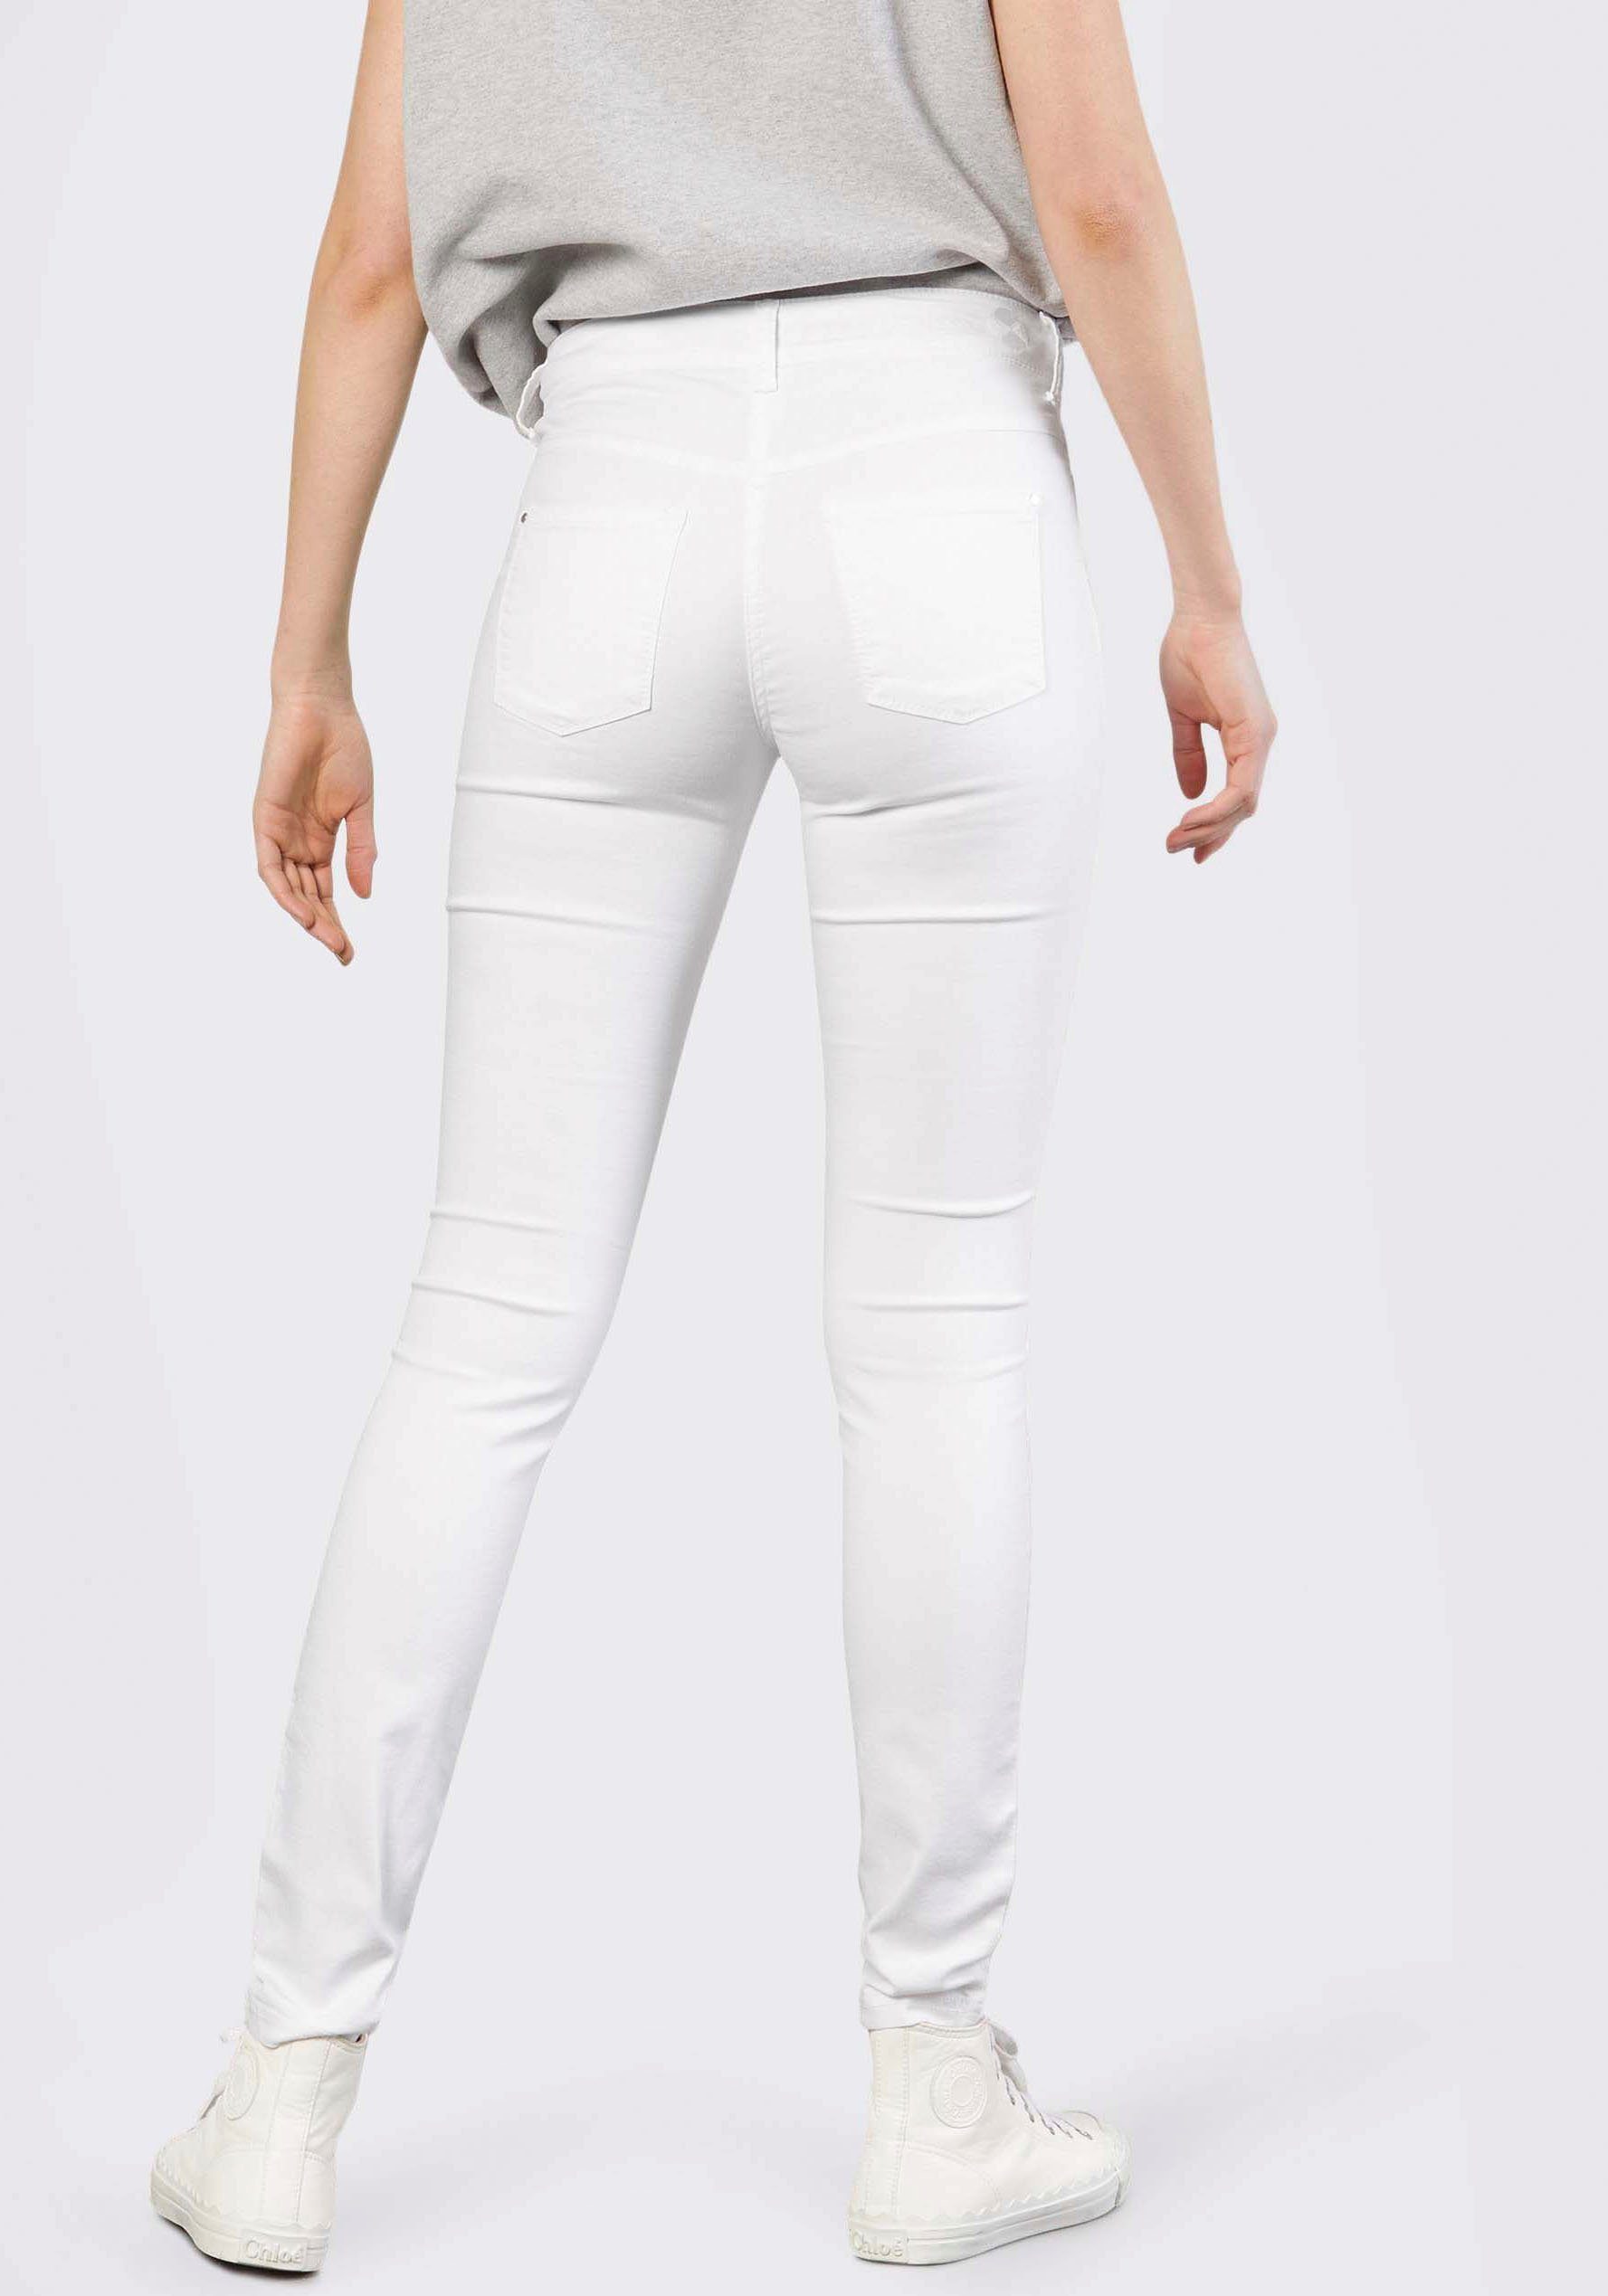 Hochelastische den für whitedeni Skinny MAC Dream Sitz Qualität sorgt Skinny-fit-Jeans perfekten